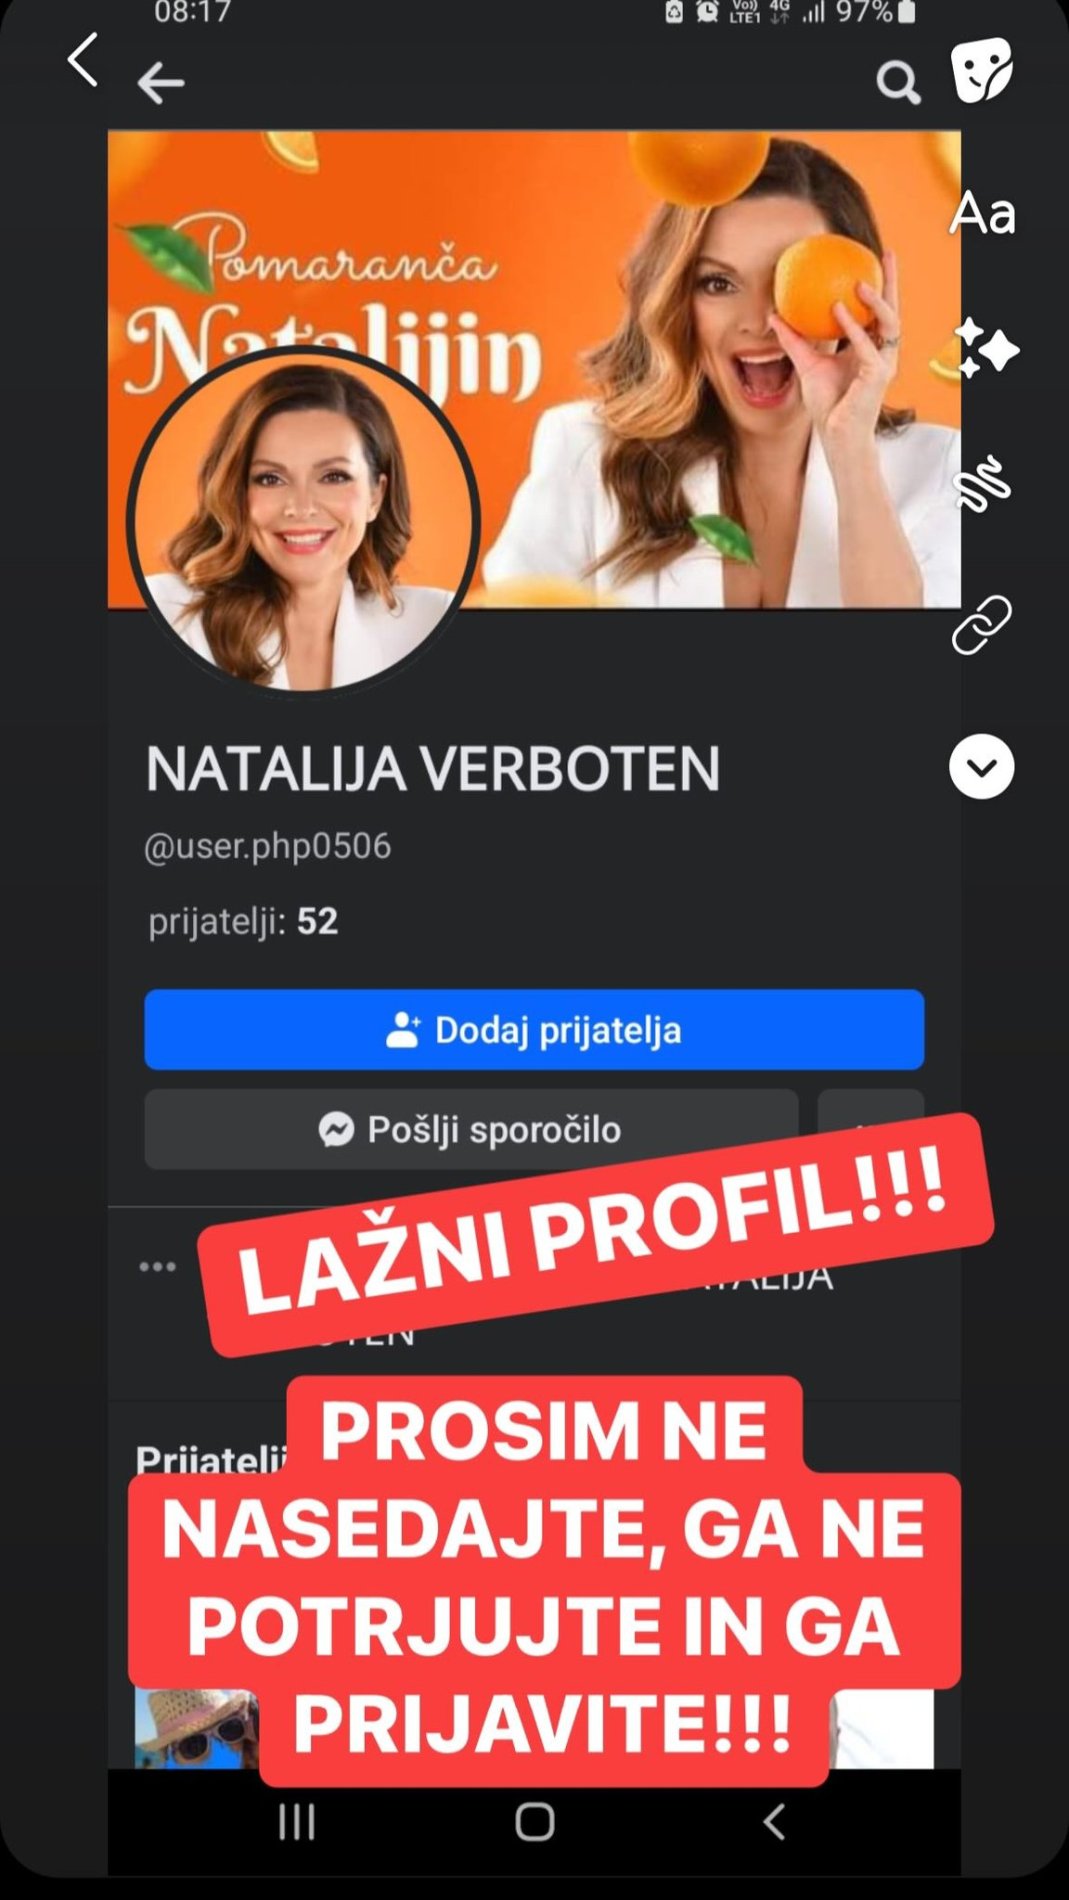 Lažen profil v imenu Natalije Verboten. Vir: Instagram